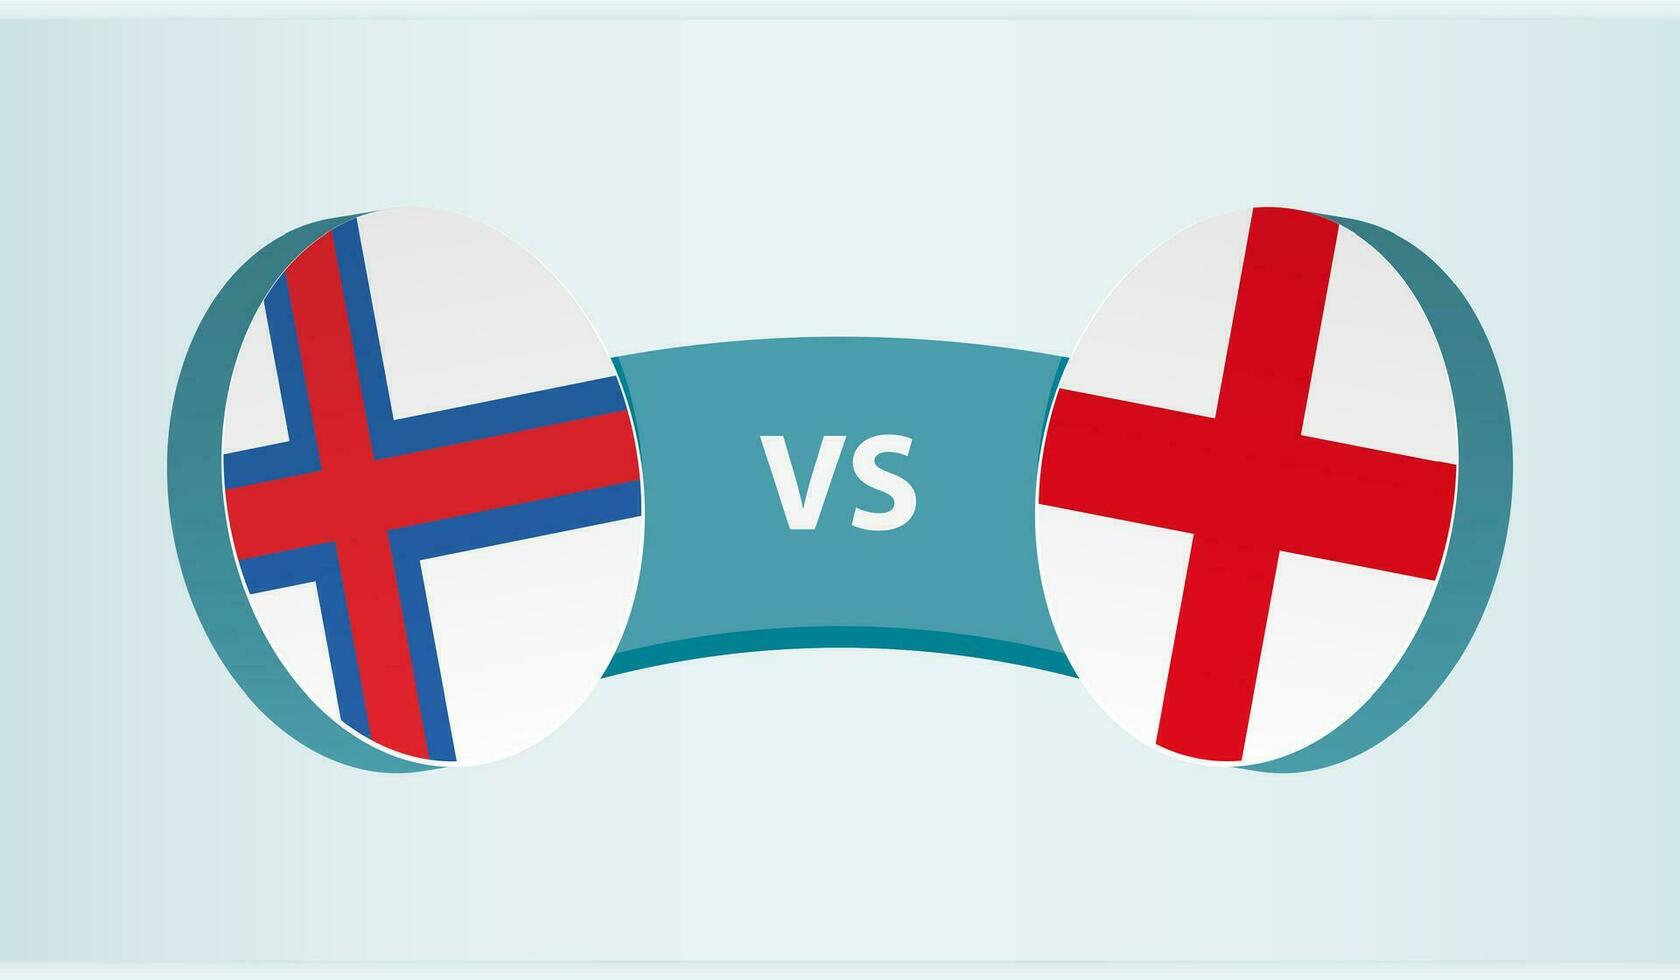 faroe öar mot England, team sporter konkurrens begrepp. vektor